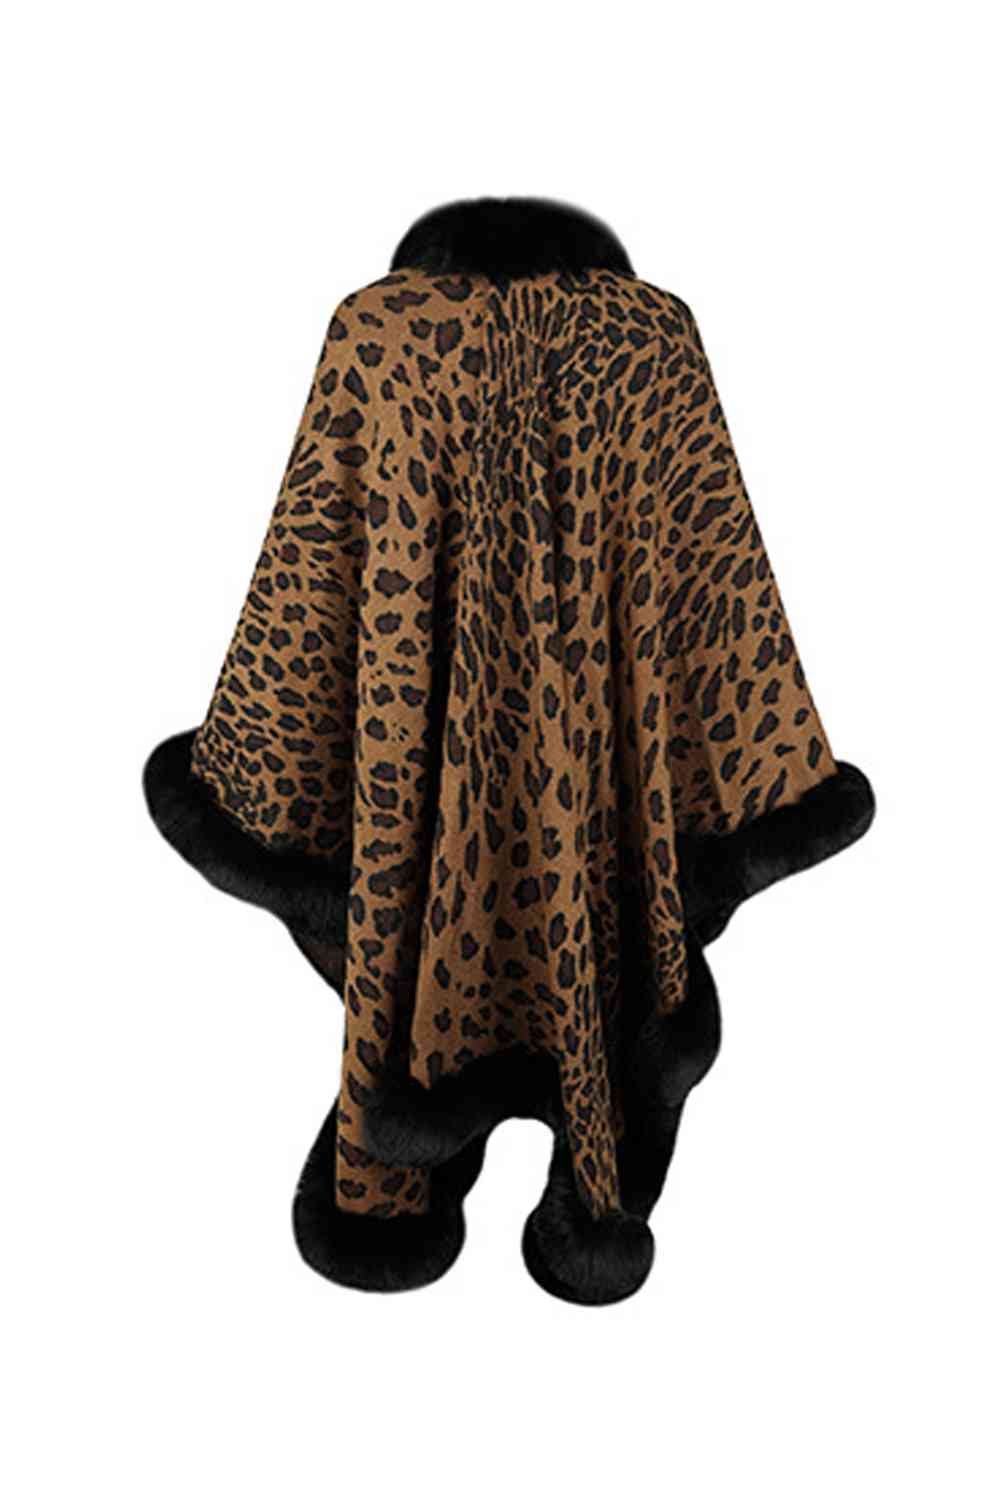 Large Leopard Plush Faux Fur Heavy Cardigan Oversized Sweater Poncho Jacket